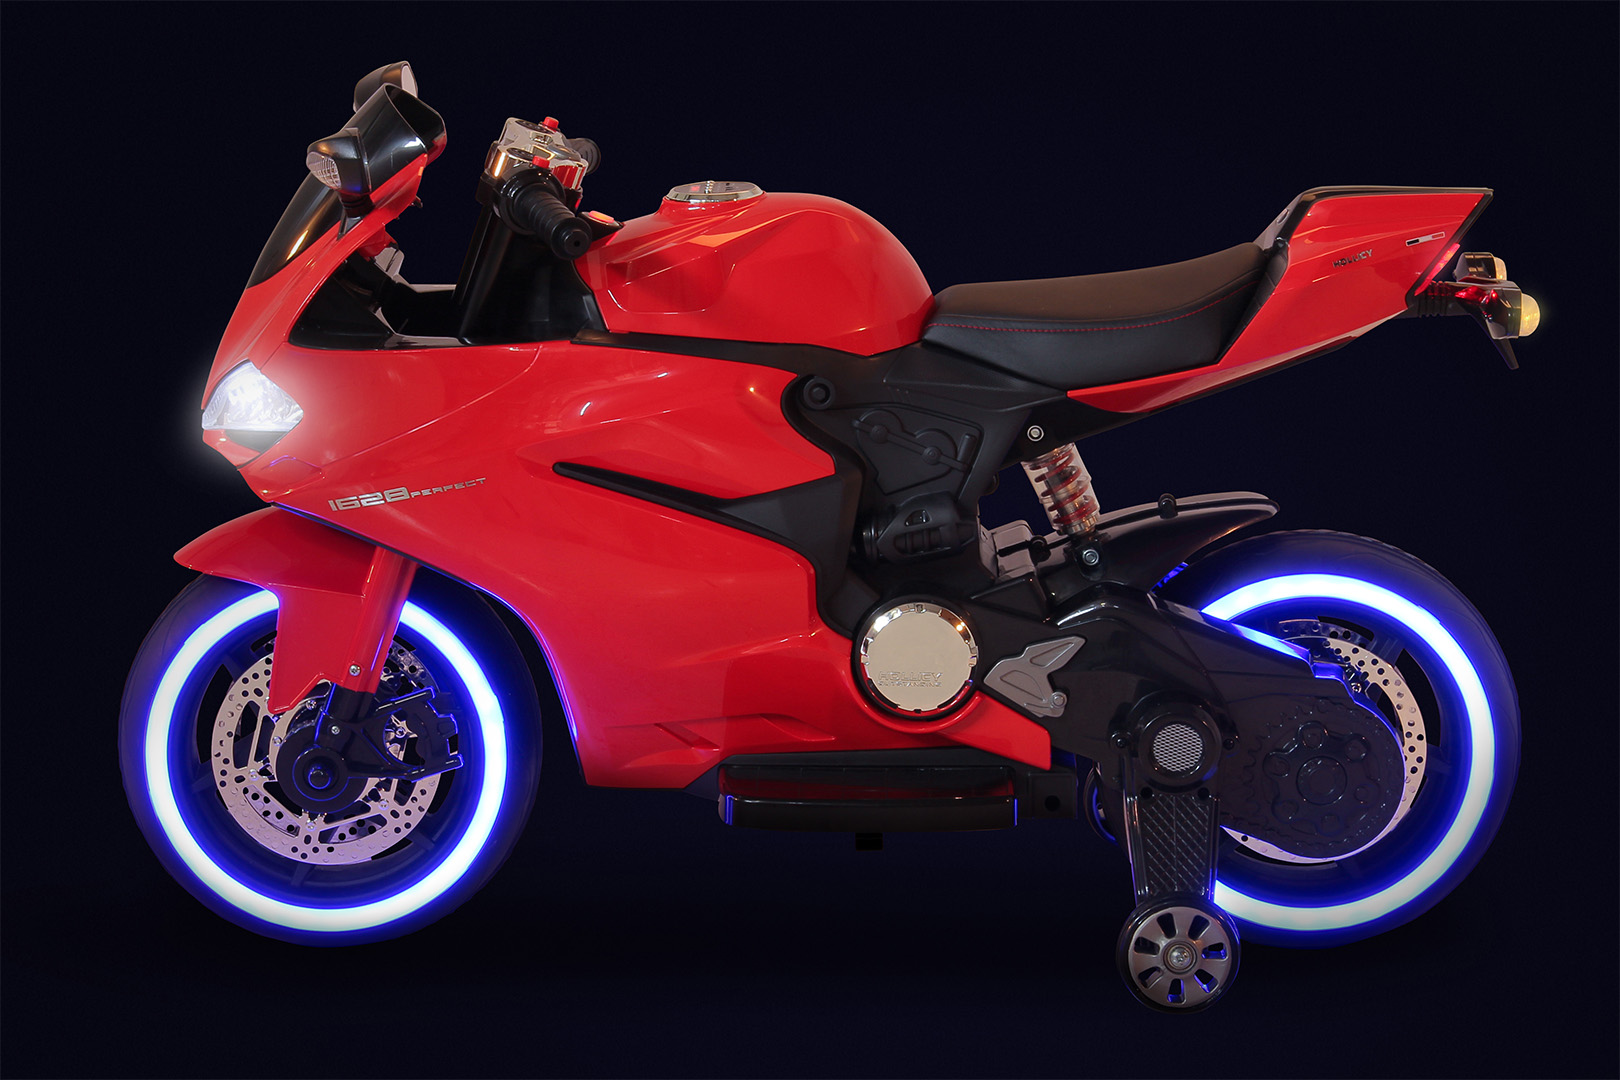 Motorrad LED Lichter Auto Willkommen Licht Motor Chassis Modifizierte Lampe  SUV Weiß Rot Blau Projektor Chassis Dekor Motoren Beleuchtung Zubehör